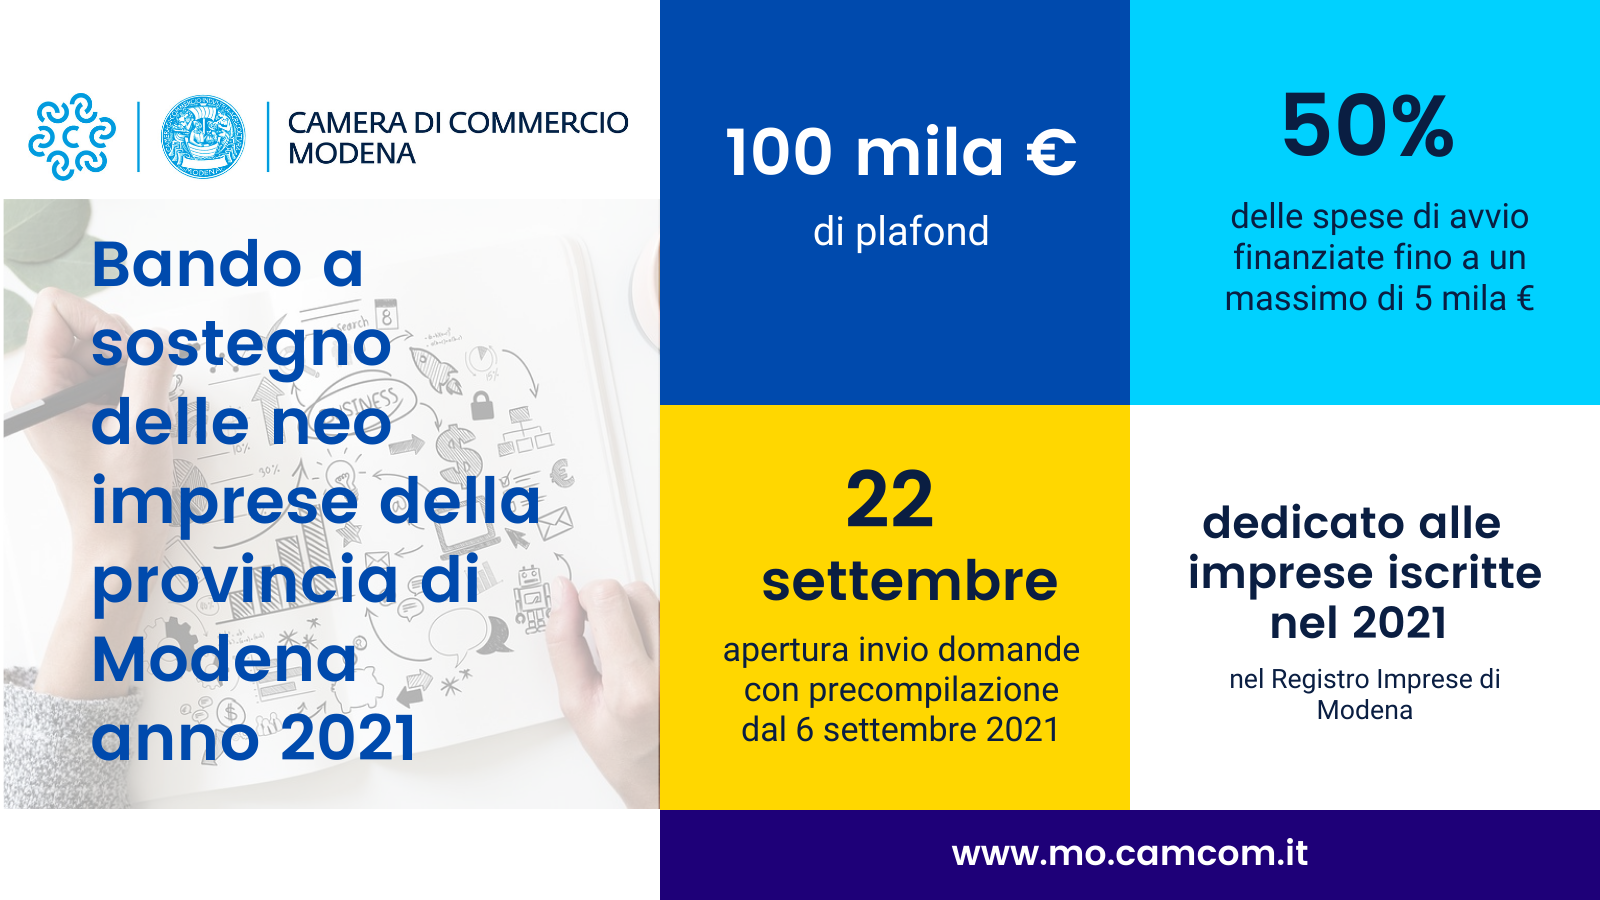 Bando a sostegno delle neo imprese della provincia di Modena - anno 2021